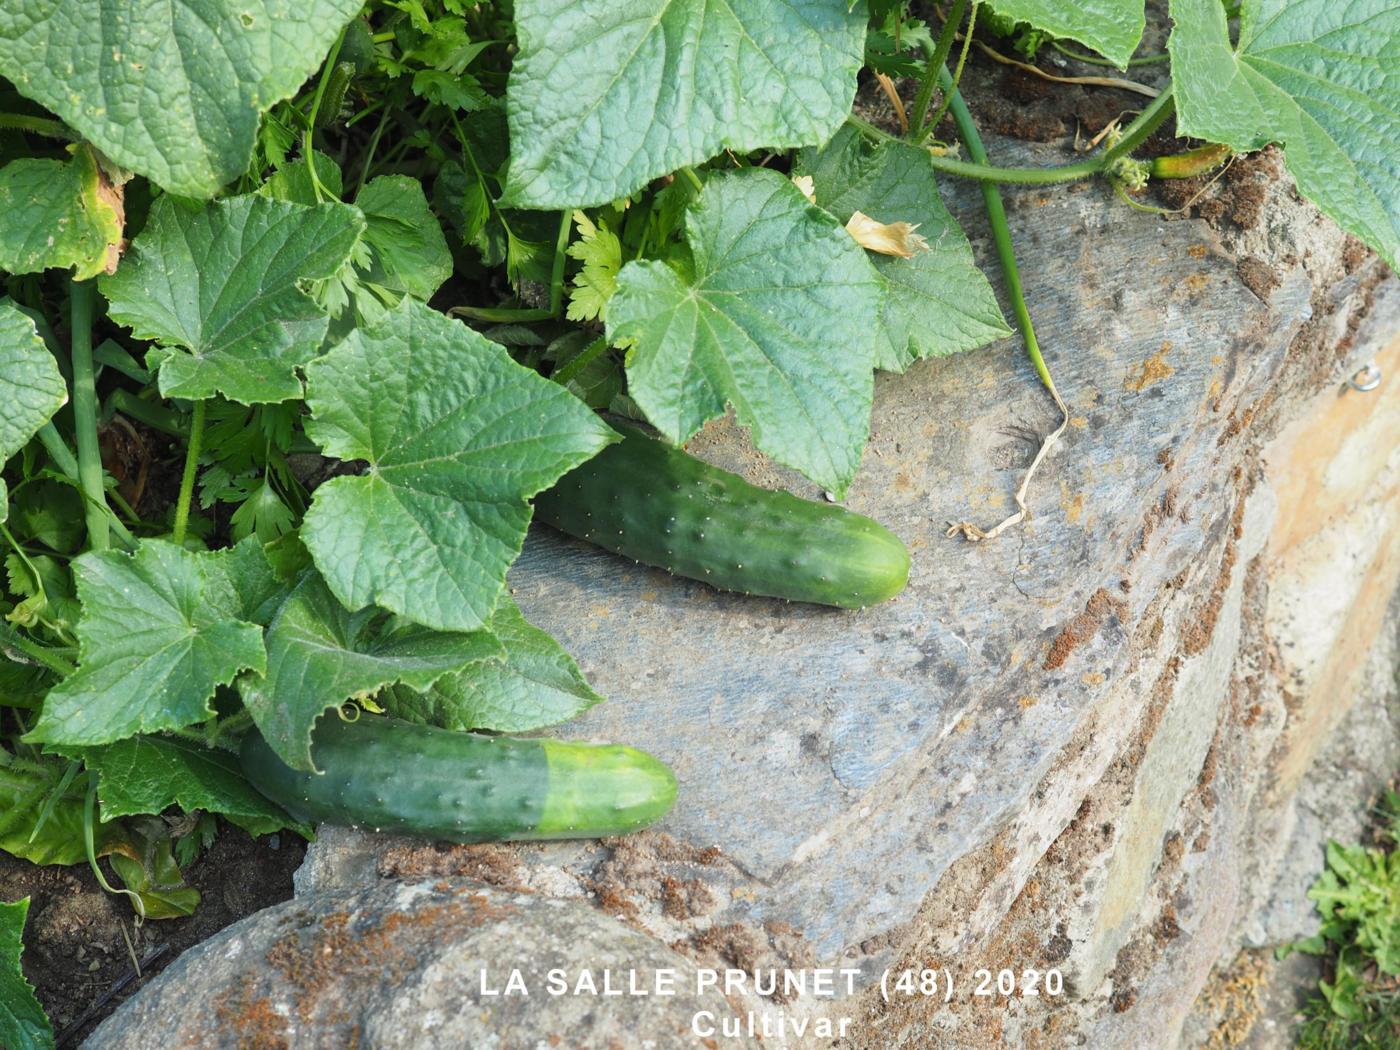 Cucumber plant